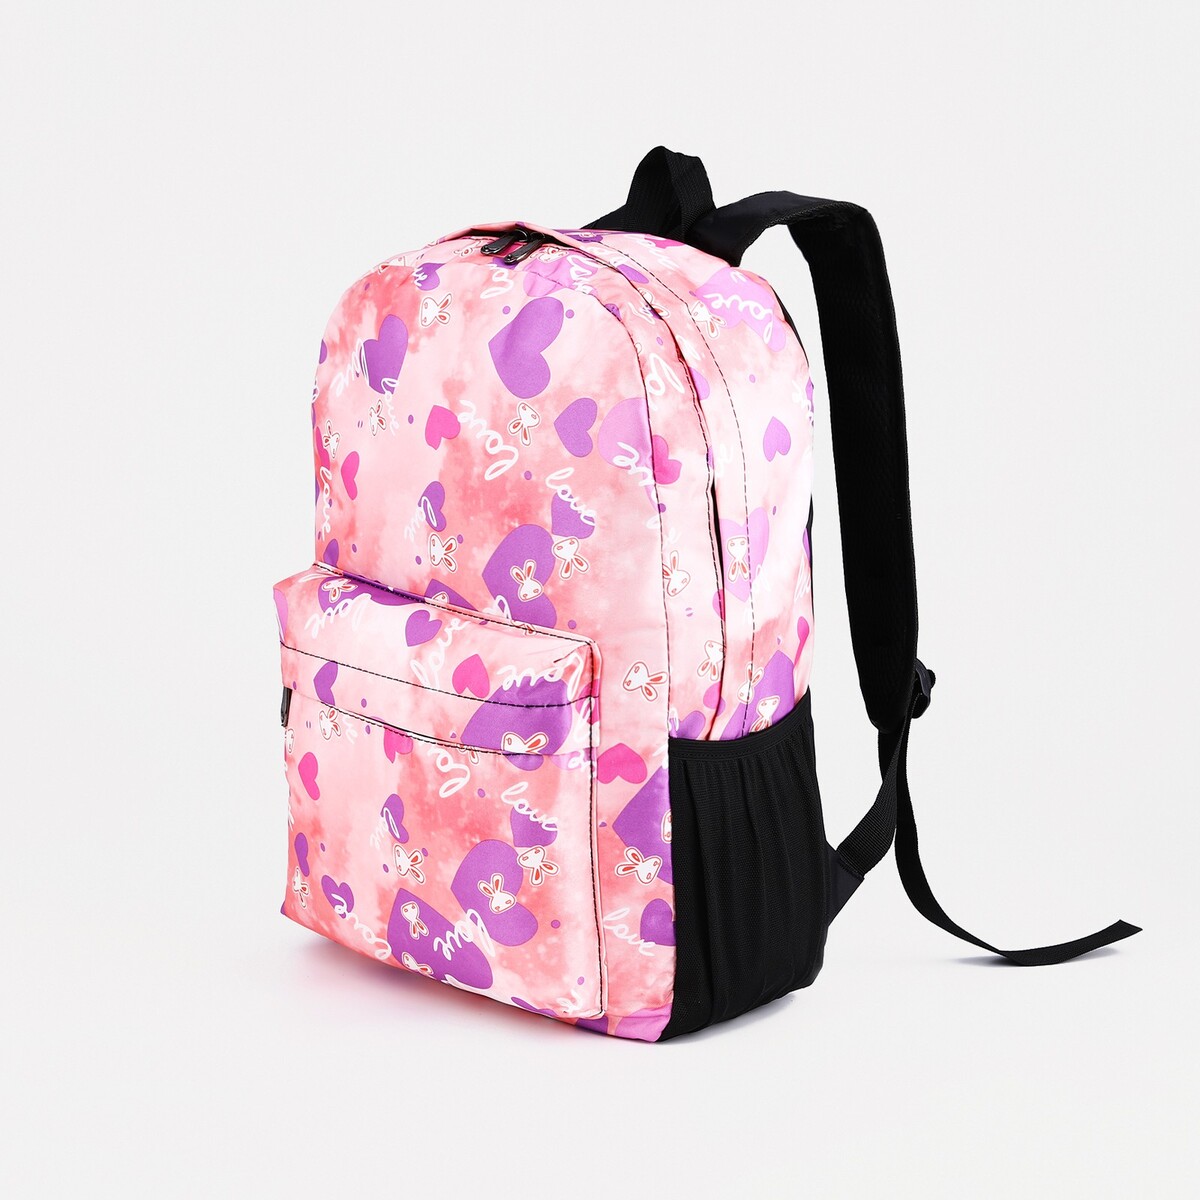 Рюкзак на молнии, 3 наружных кармана, цвет розовый рюкзак сумка на молнии 4 наружных кармана отделение для обуви розовый